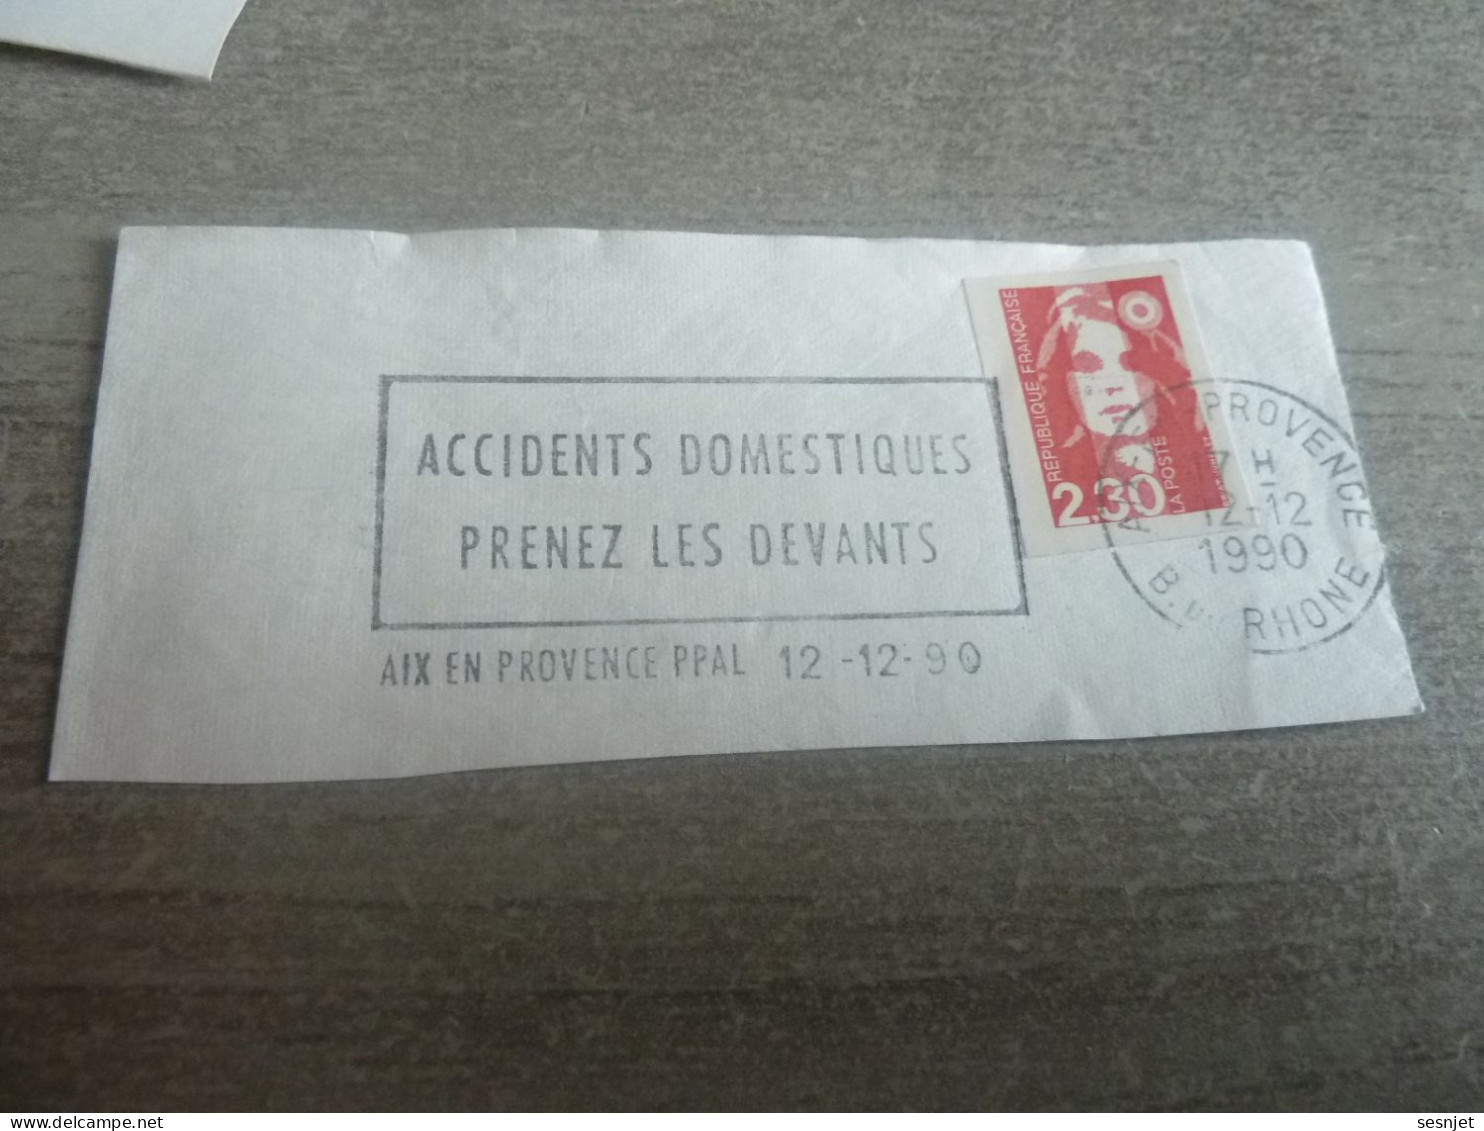 Aix-en-Provence - Accidents Domestiques Prenez Les Devants - Yt 2630 Adhésif 1 - Flamme Philatélique - Année 1990 - - Used Stamps